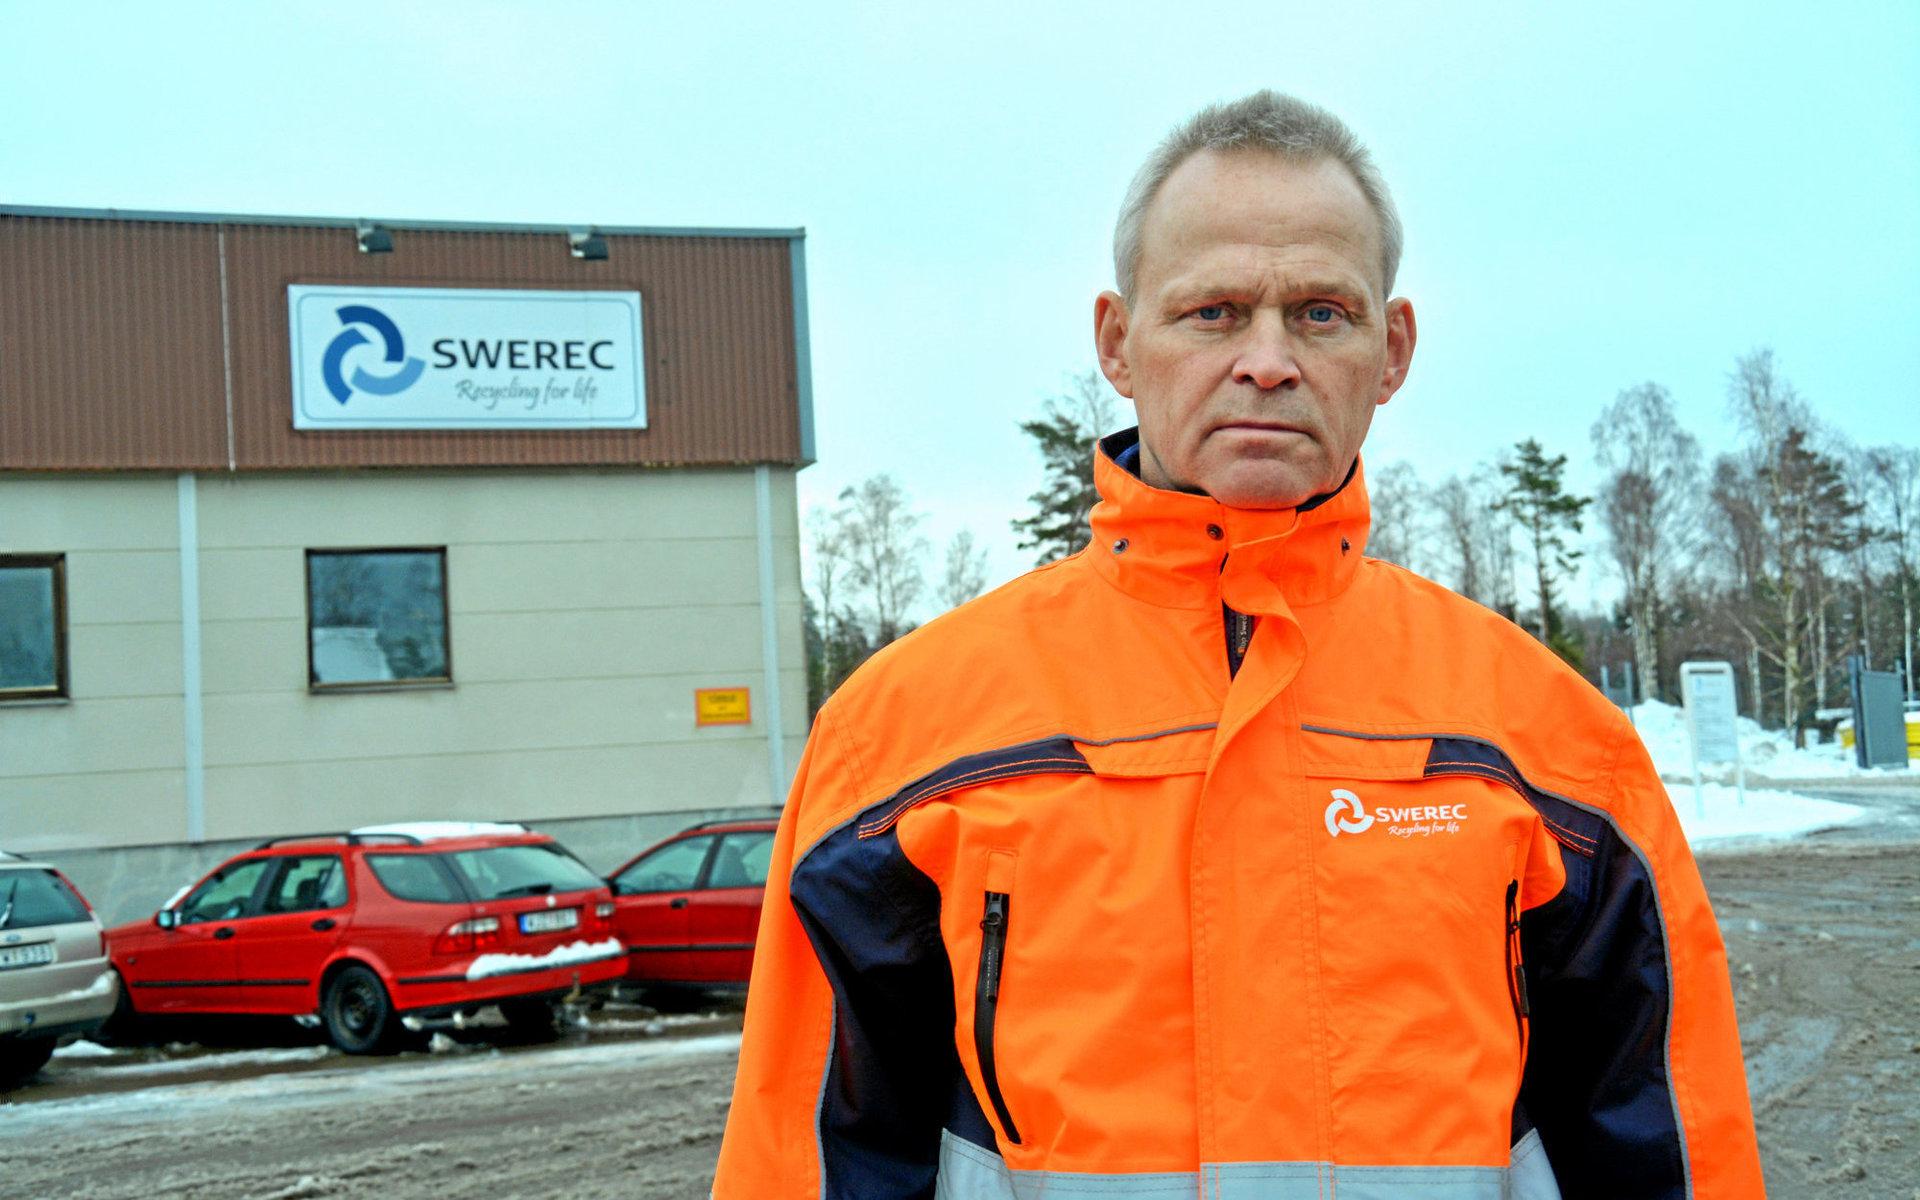 Nummer 8 är Leif Karlsson, vd för aktiebolaget Swerec i Sverige, beläget i Bredaryd.